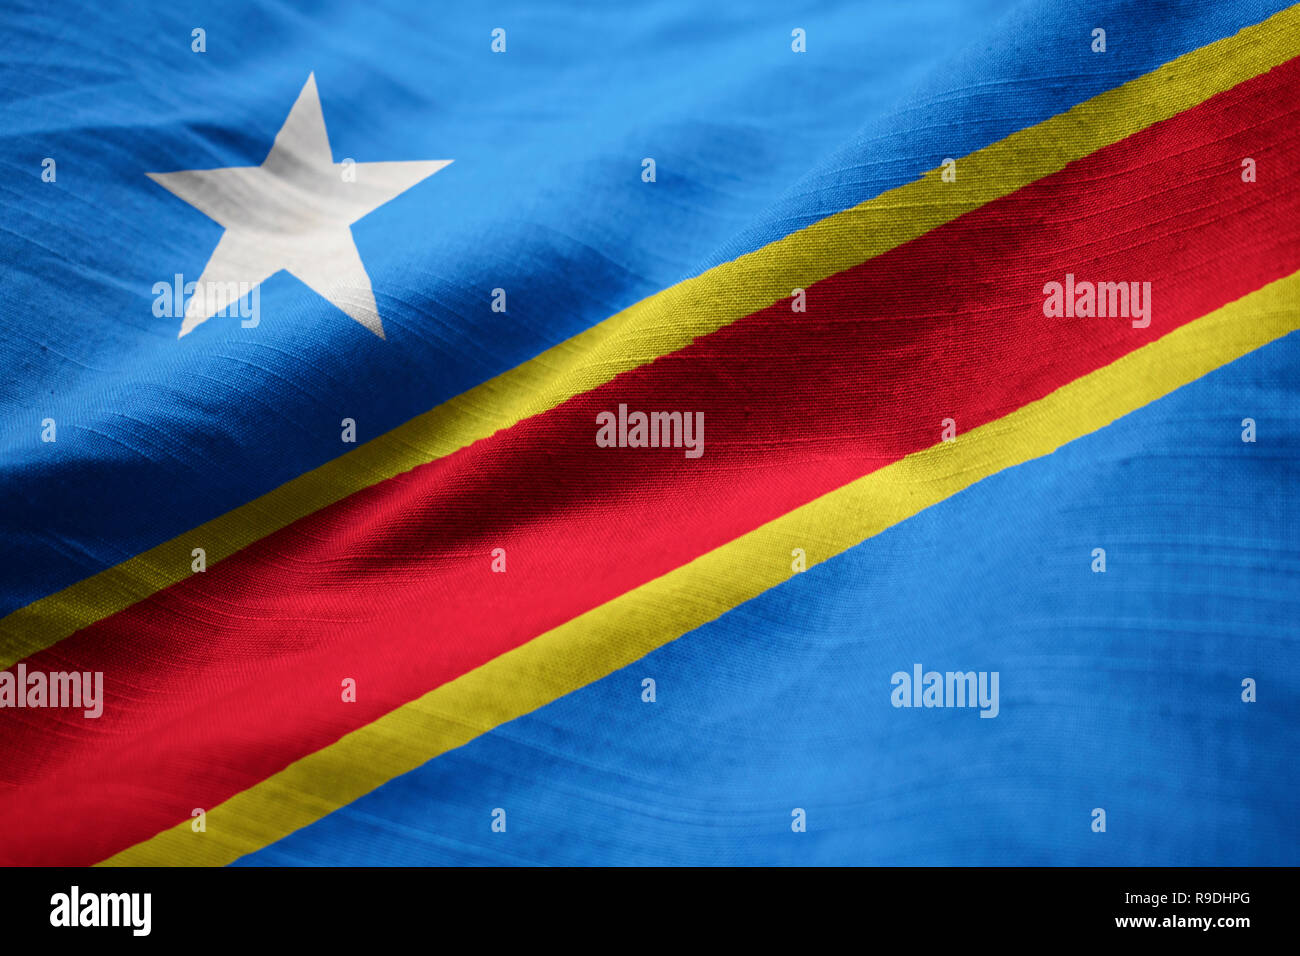 Detailansicht der gekräuselten Demokratische Republik Kongo Flagge, der Demokratischen Republik Kongo Flagge weht im Wind Stockfoto